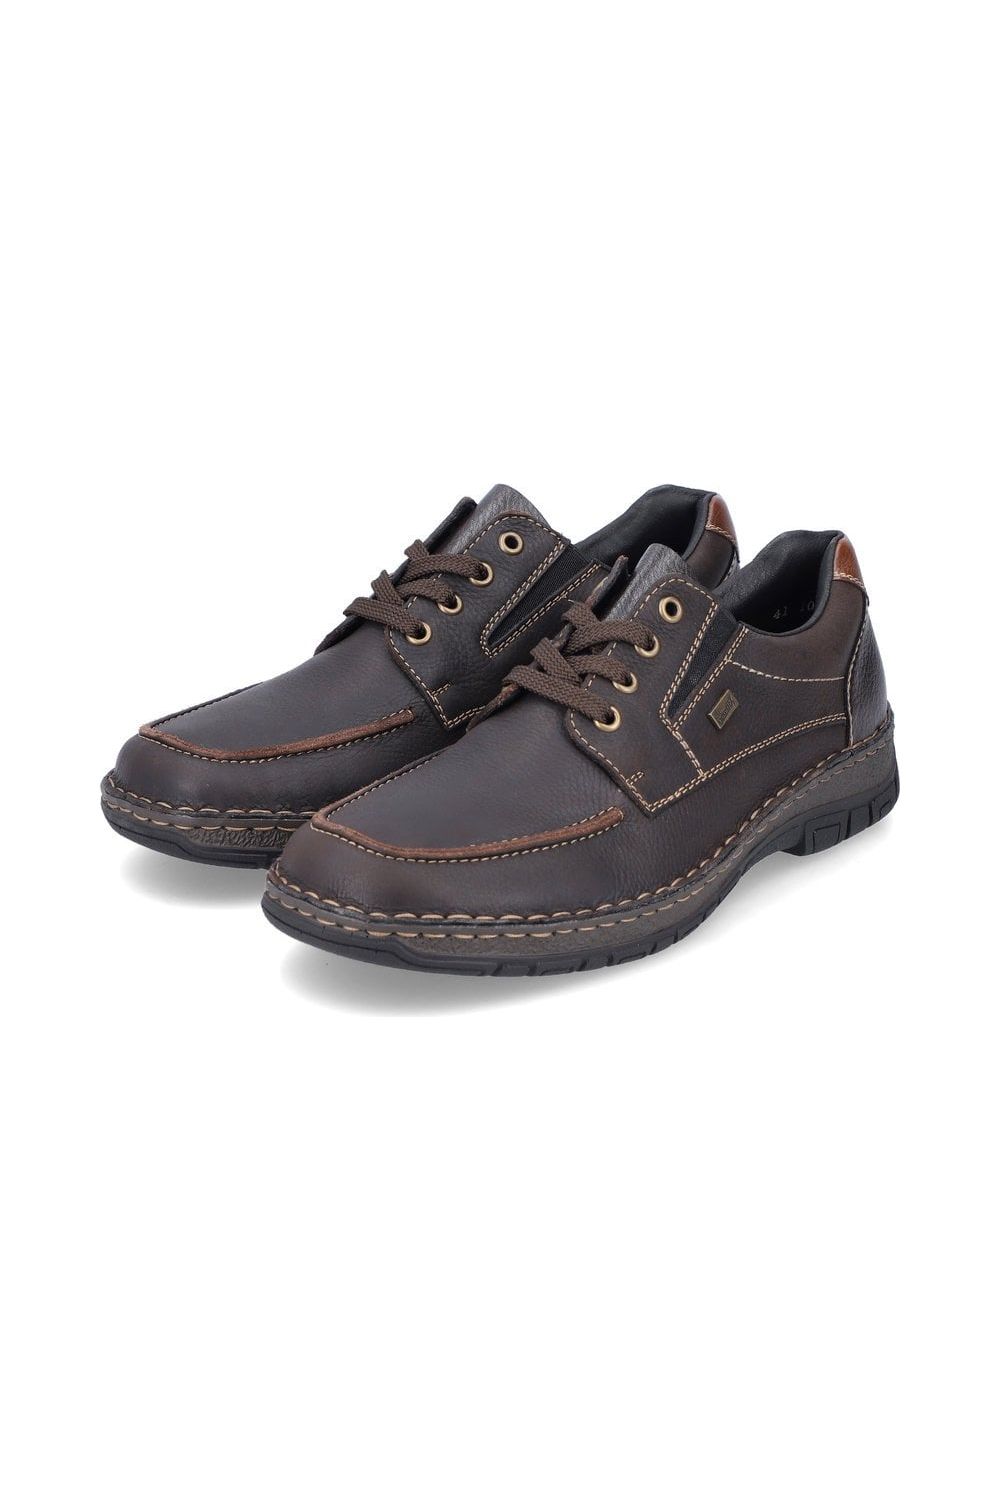 Rieker Mens Shoes 05100 25 brown